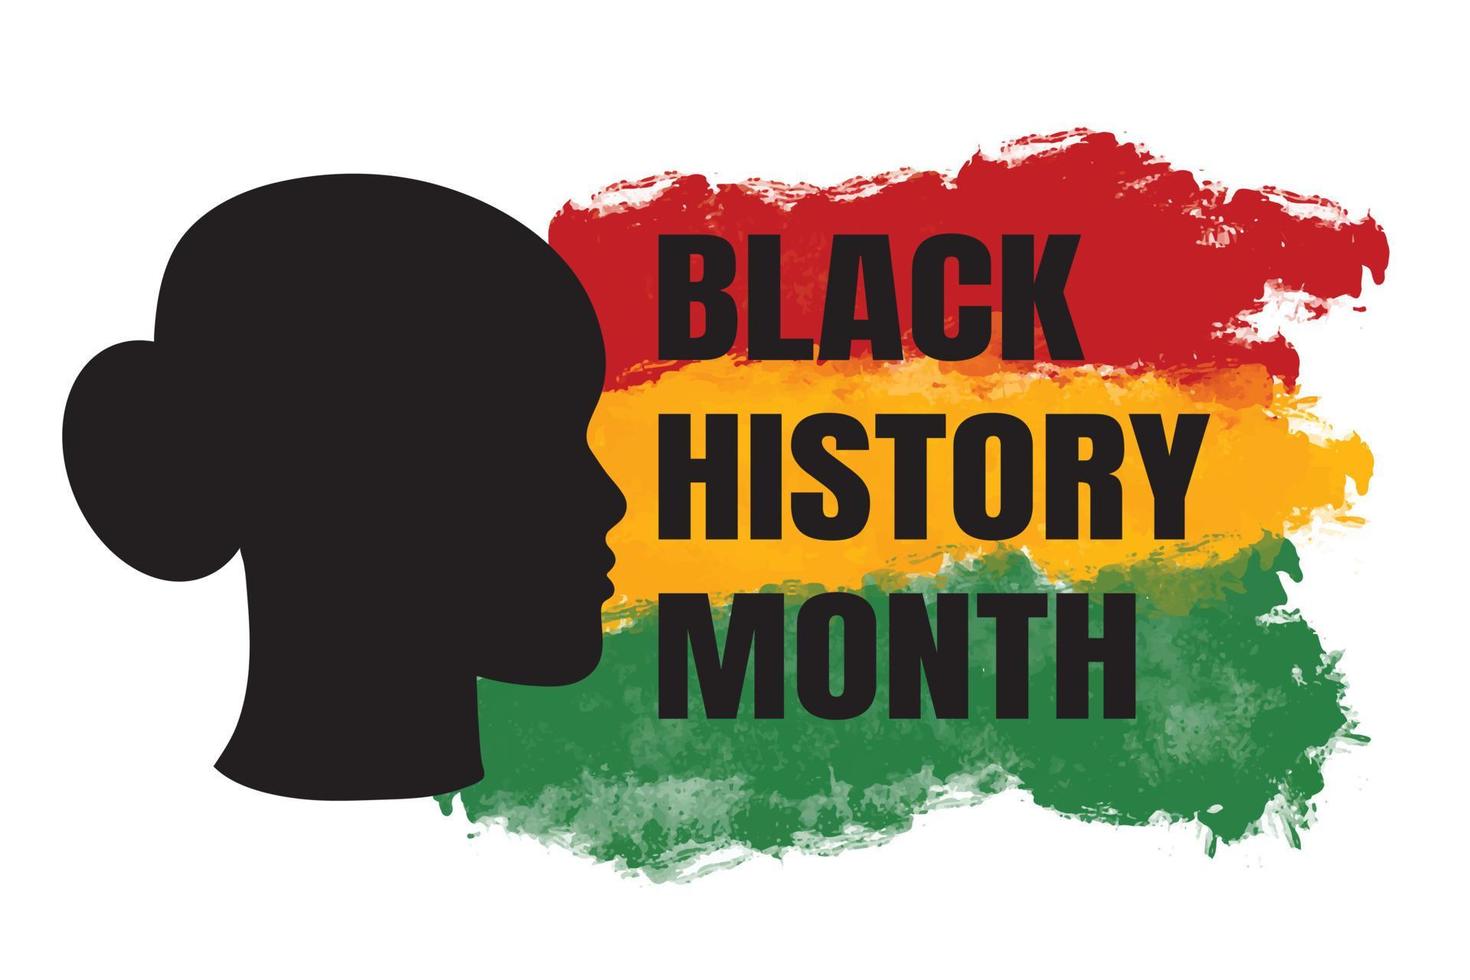 zwarte geschiedenis maand banner met vrouw zwart silhouet en Afro-Amerikaanse grunge getextureerde vlag. vectorontwerp voor de viering van de vakantie van het etnische erfgoed van de VS. uitnodiging, flyer ontwerp vector